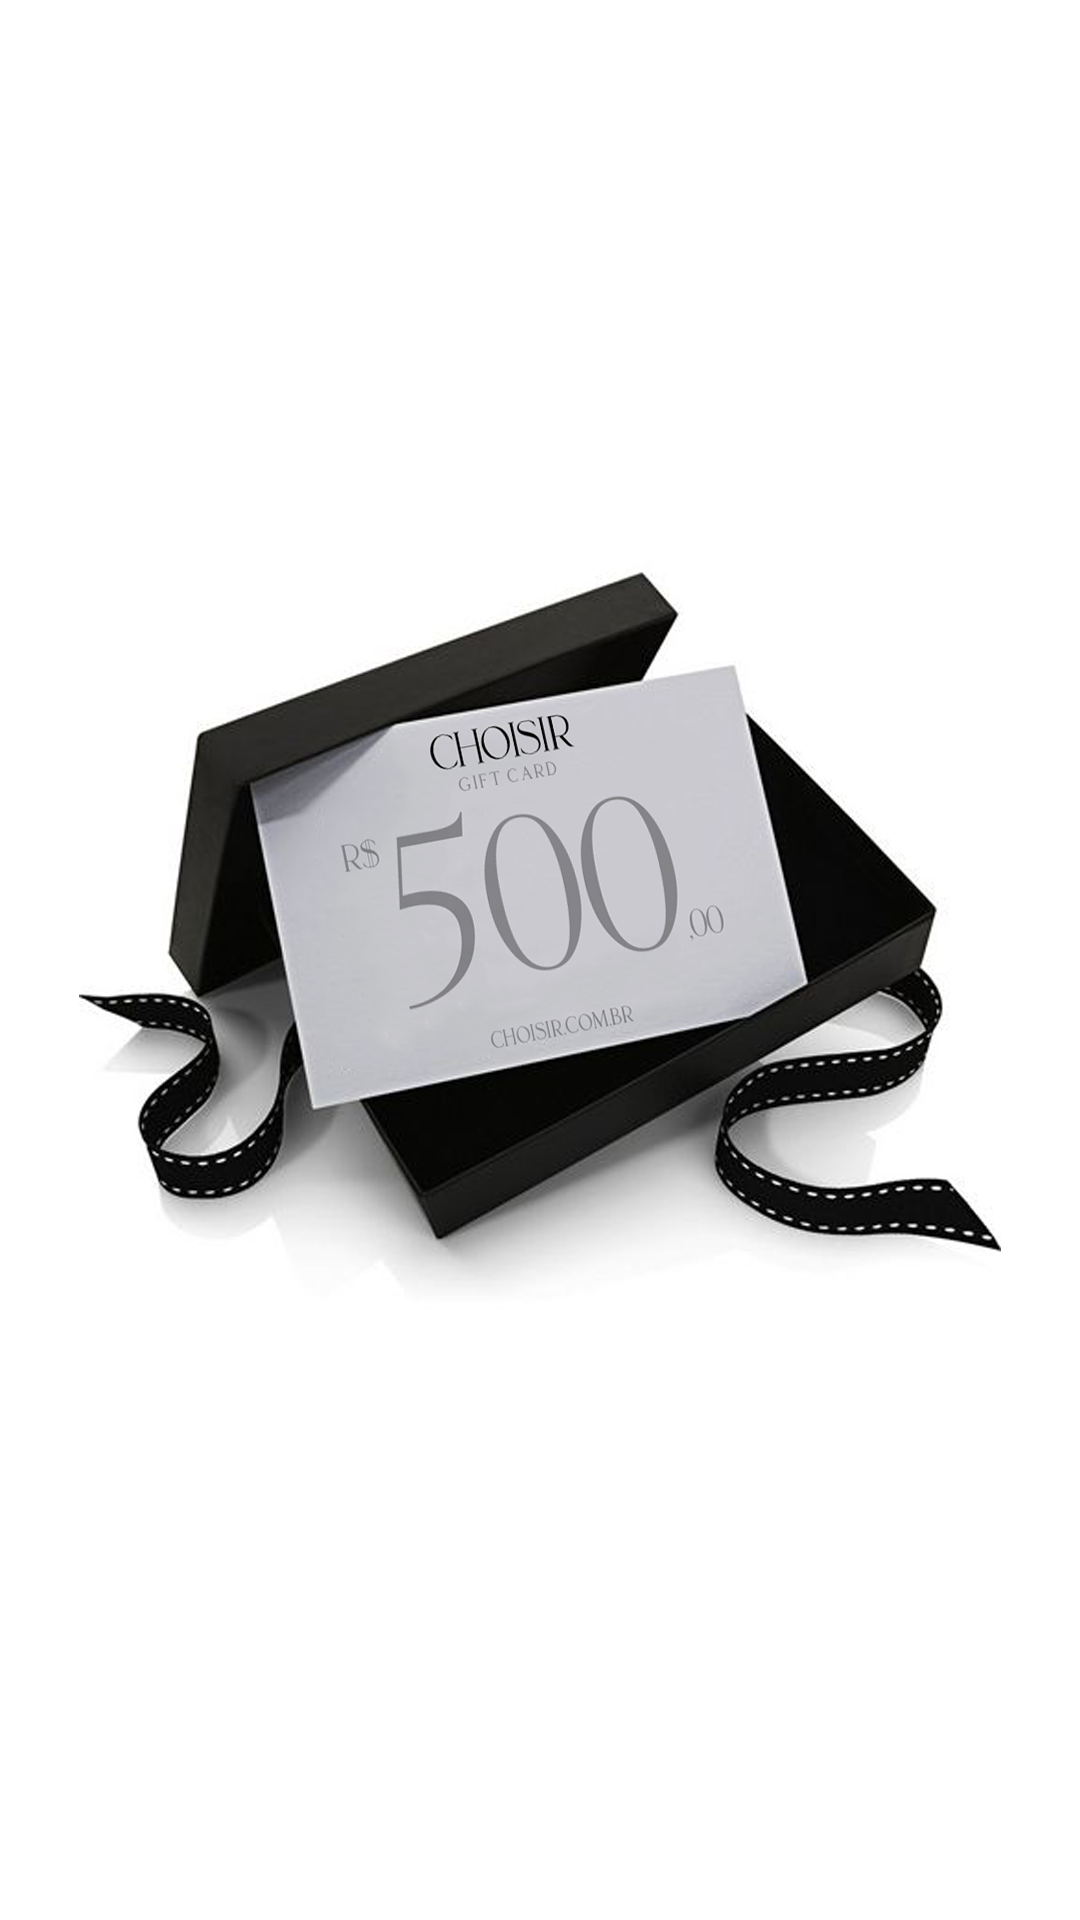 Choisir Gift Card - R$500